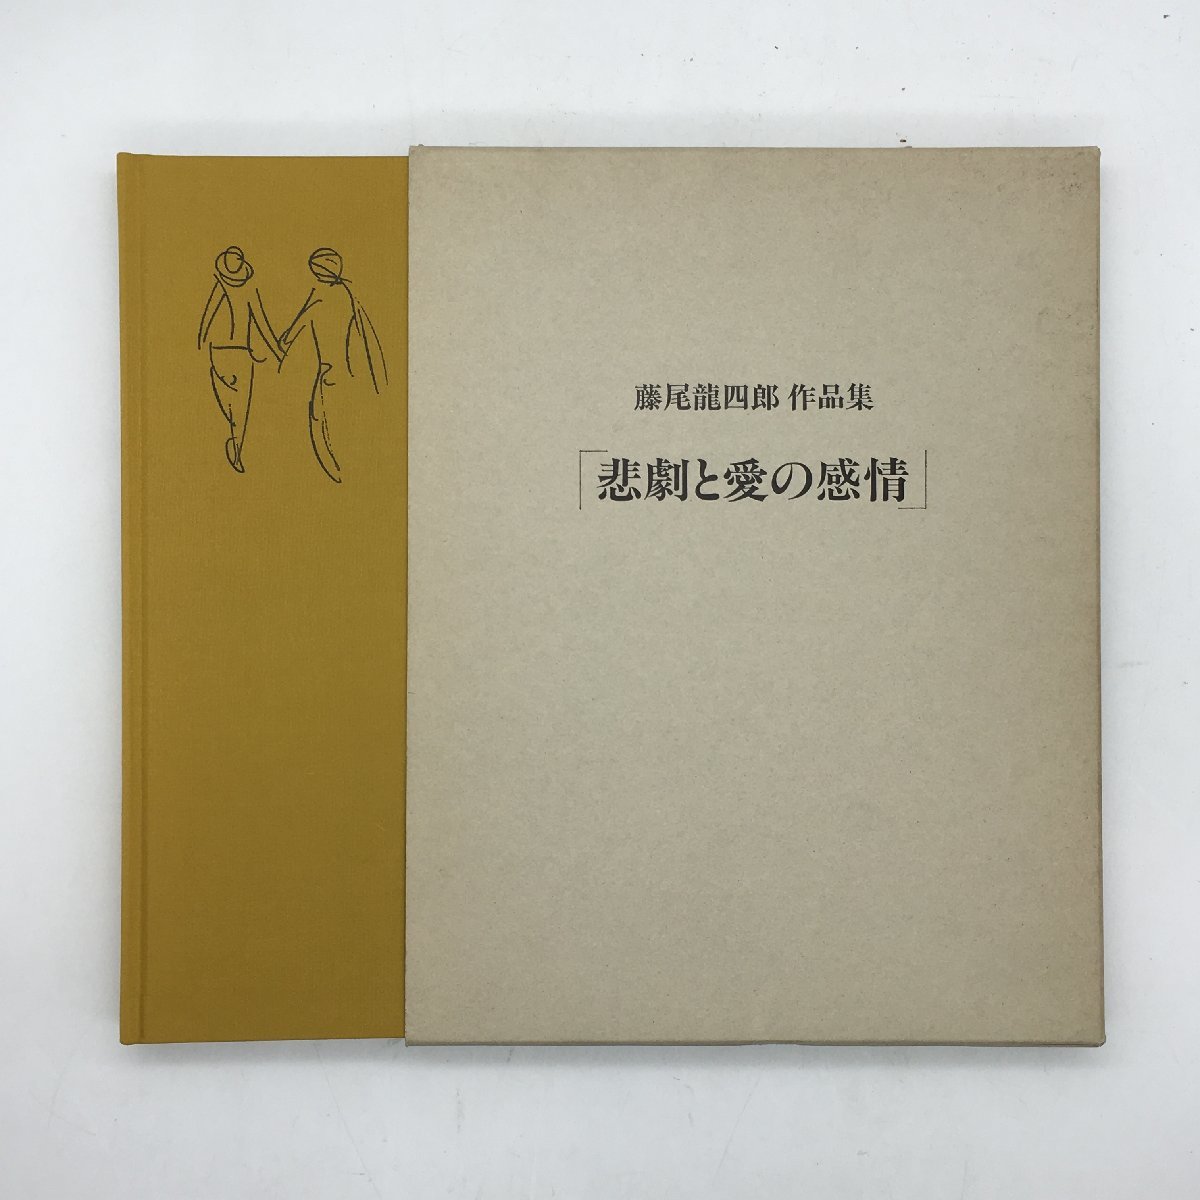 [आर्ट बुक] त्रासदी और प्रेम: शिचिटो मोरी द्वारा रयुशिरो फुजिओ की कृतियाँ, युरिको फ़ुजिओ, तोशी हयाशी गैलरी मोरी द्वारा संपादित 1995 कार्यों का संग्रह चित्र b12ny, चित्रकारी, कला पुस्तक, संग्रह, कला पुस्तक